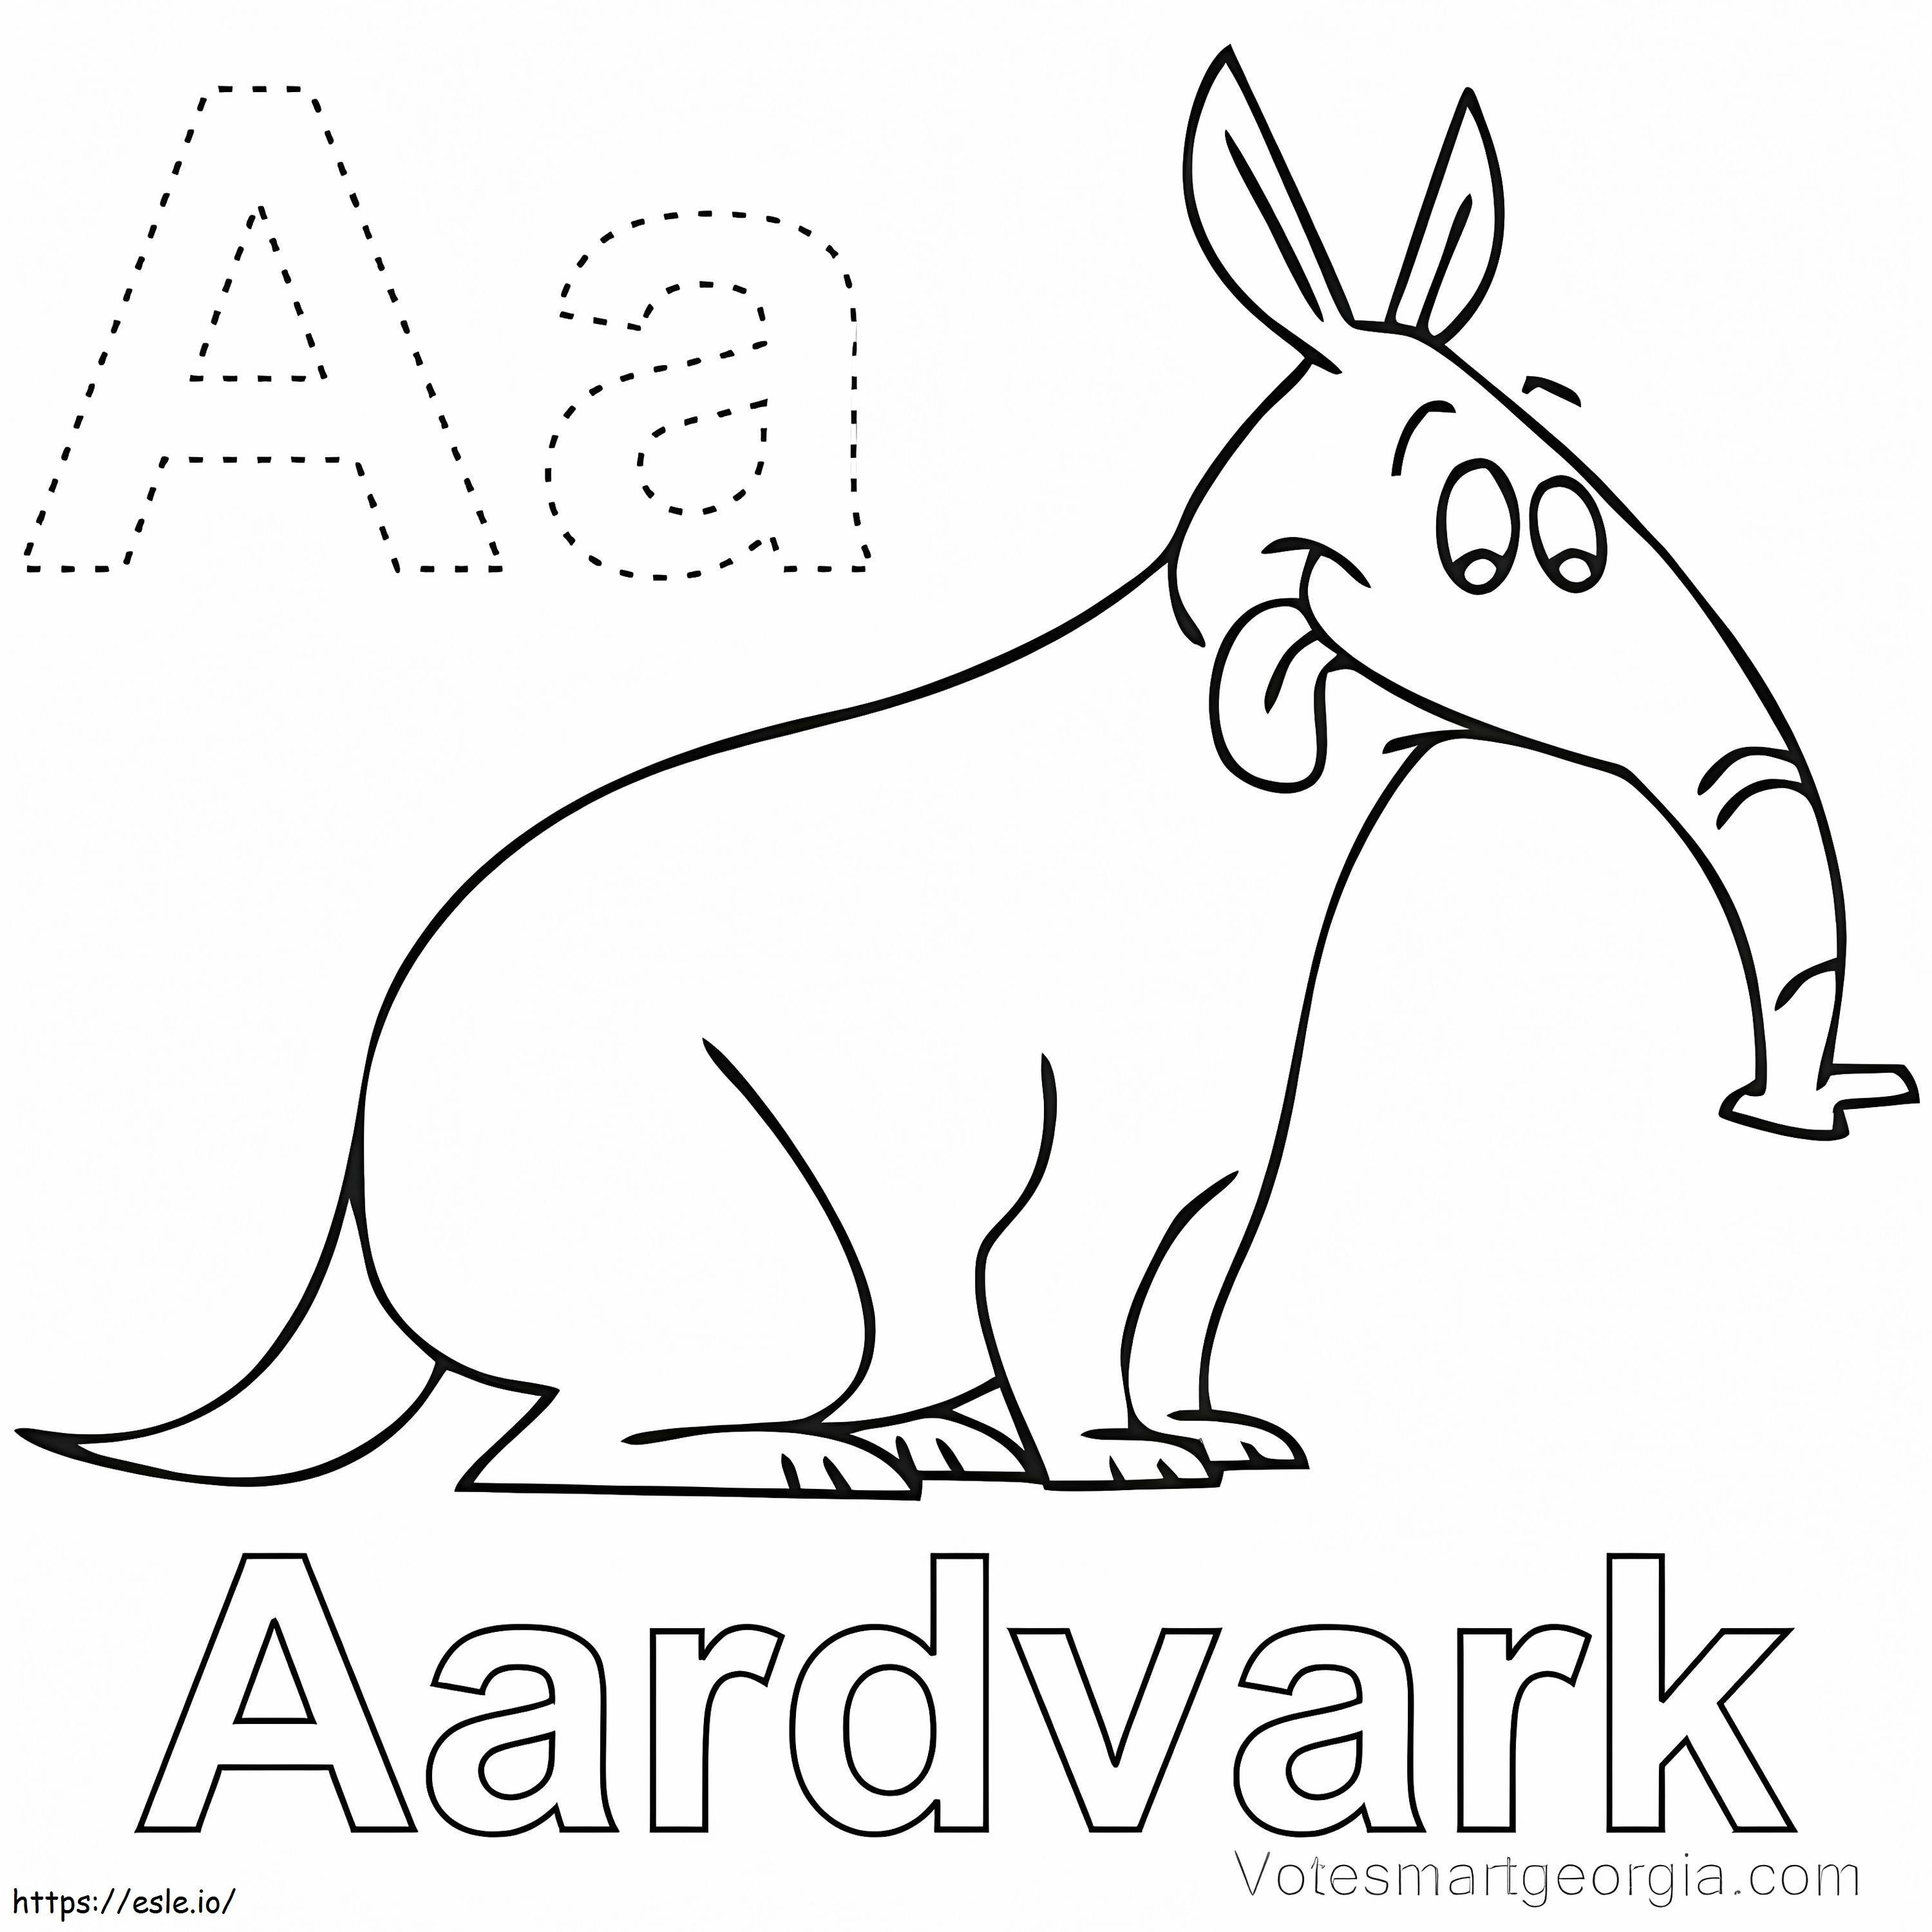 Aardvark Songtext von A ausmalbilder